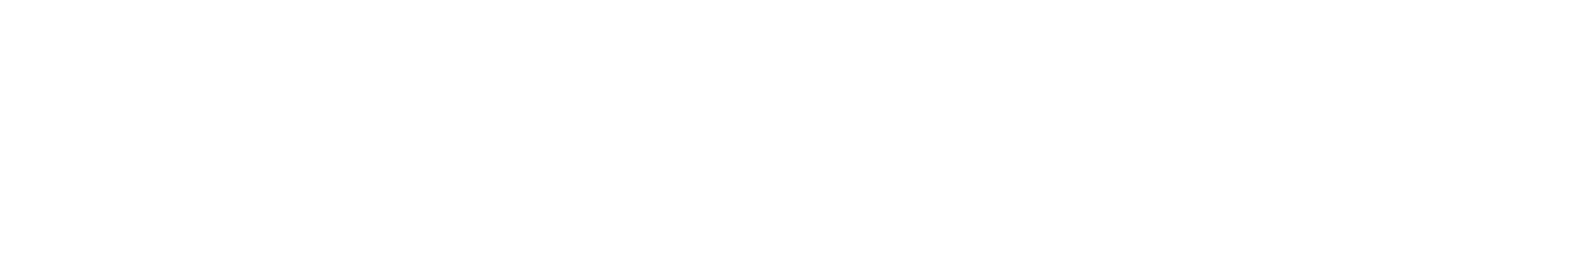 Voyager Digital logo large for dark backgrounds (transparent PNG)